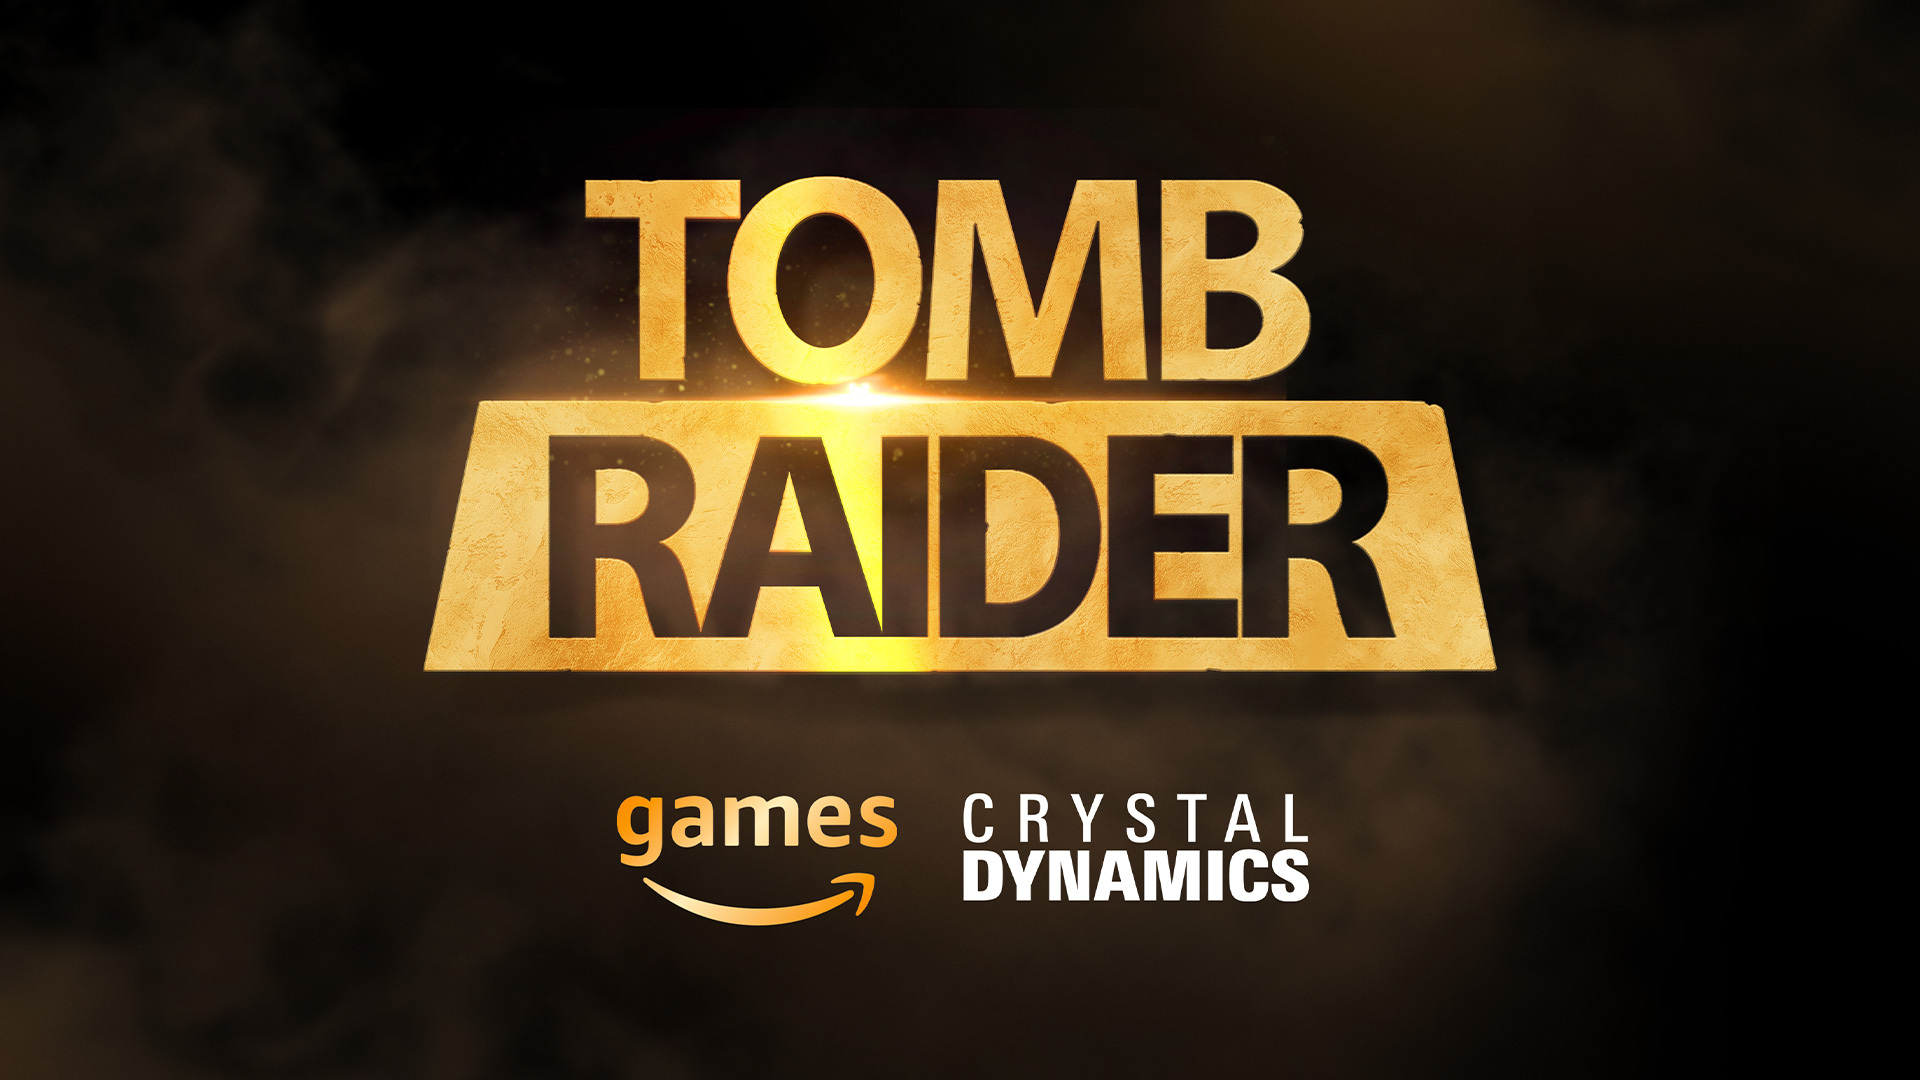 Amazon Games y Crystal Dynamics colaborarán en el desarrollo del próximo juego de Tomb Raider, que incluirá elementos clásicos de la franquicia y estará optimizado con la tecnología de Unreal Engine 5.